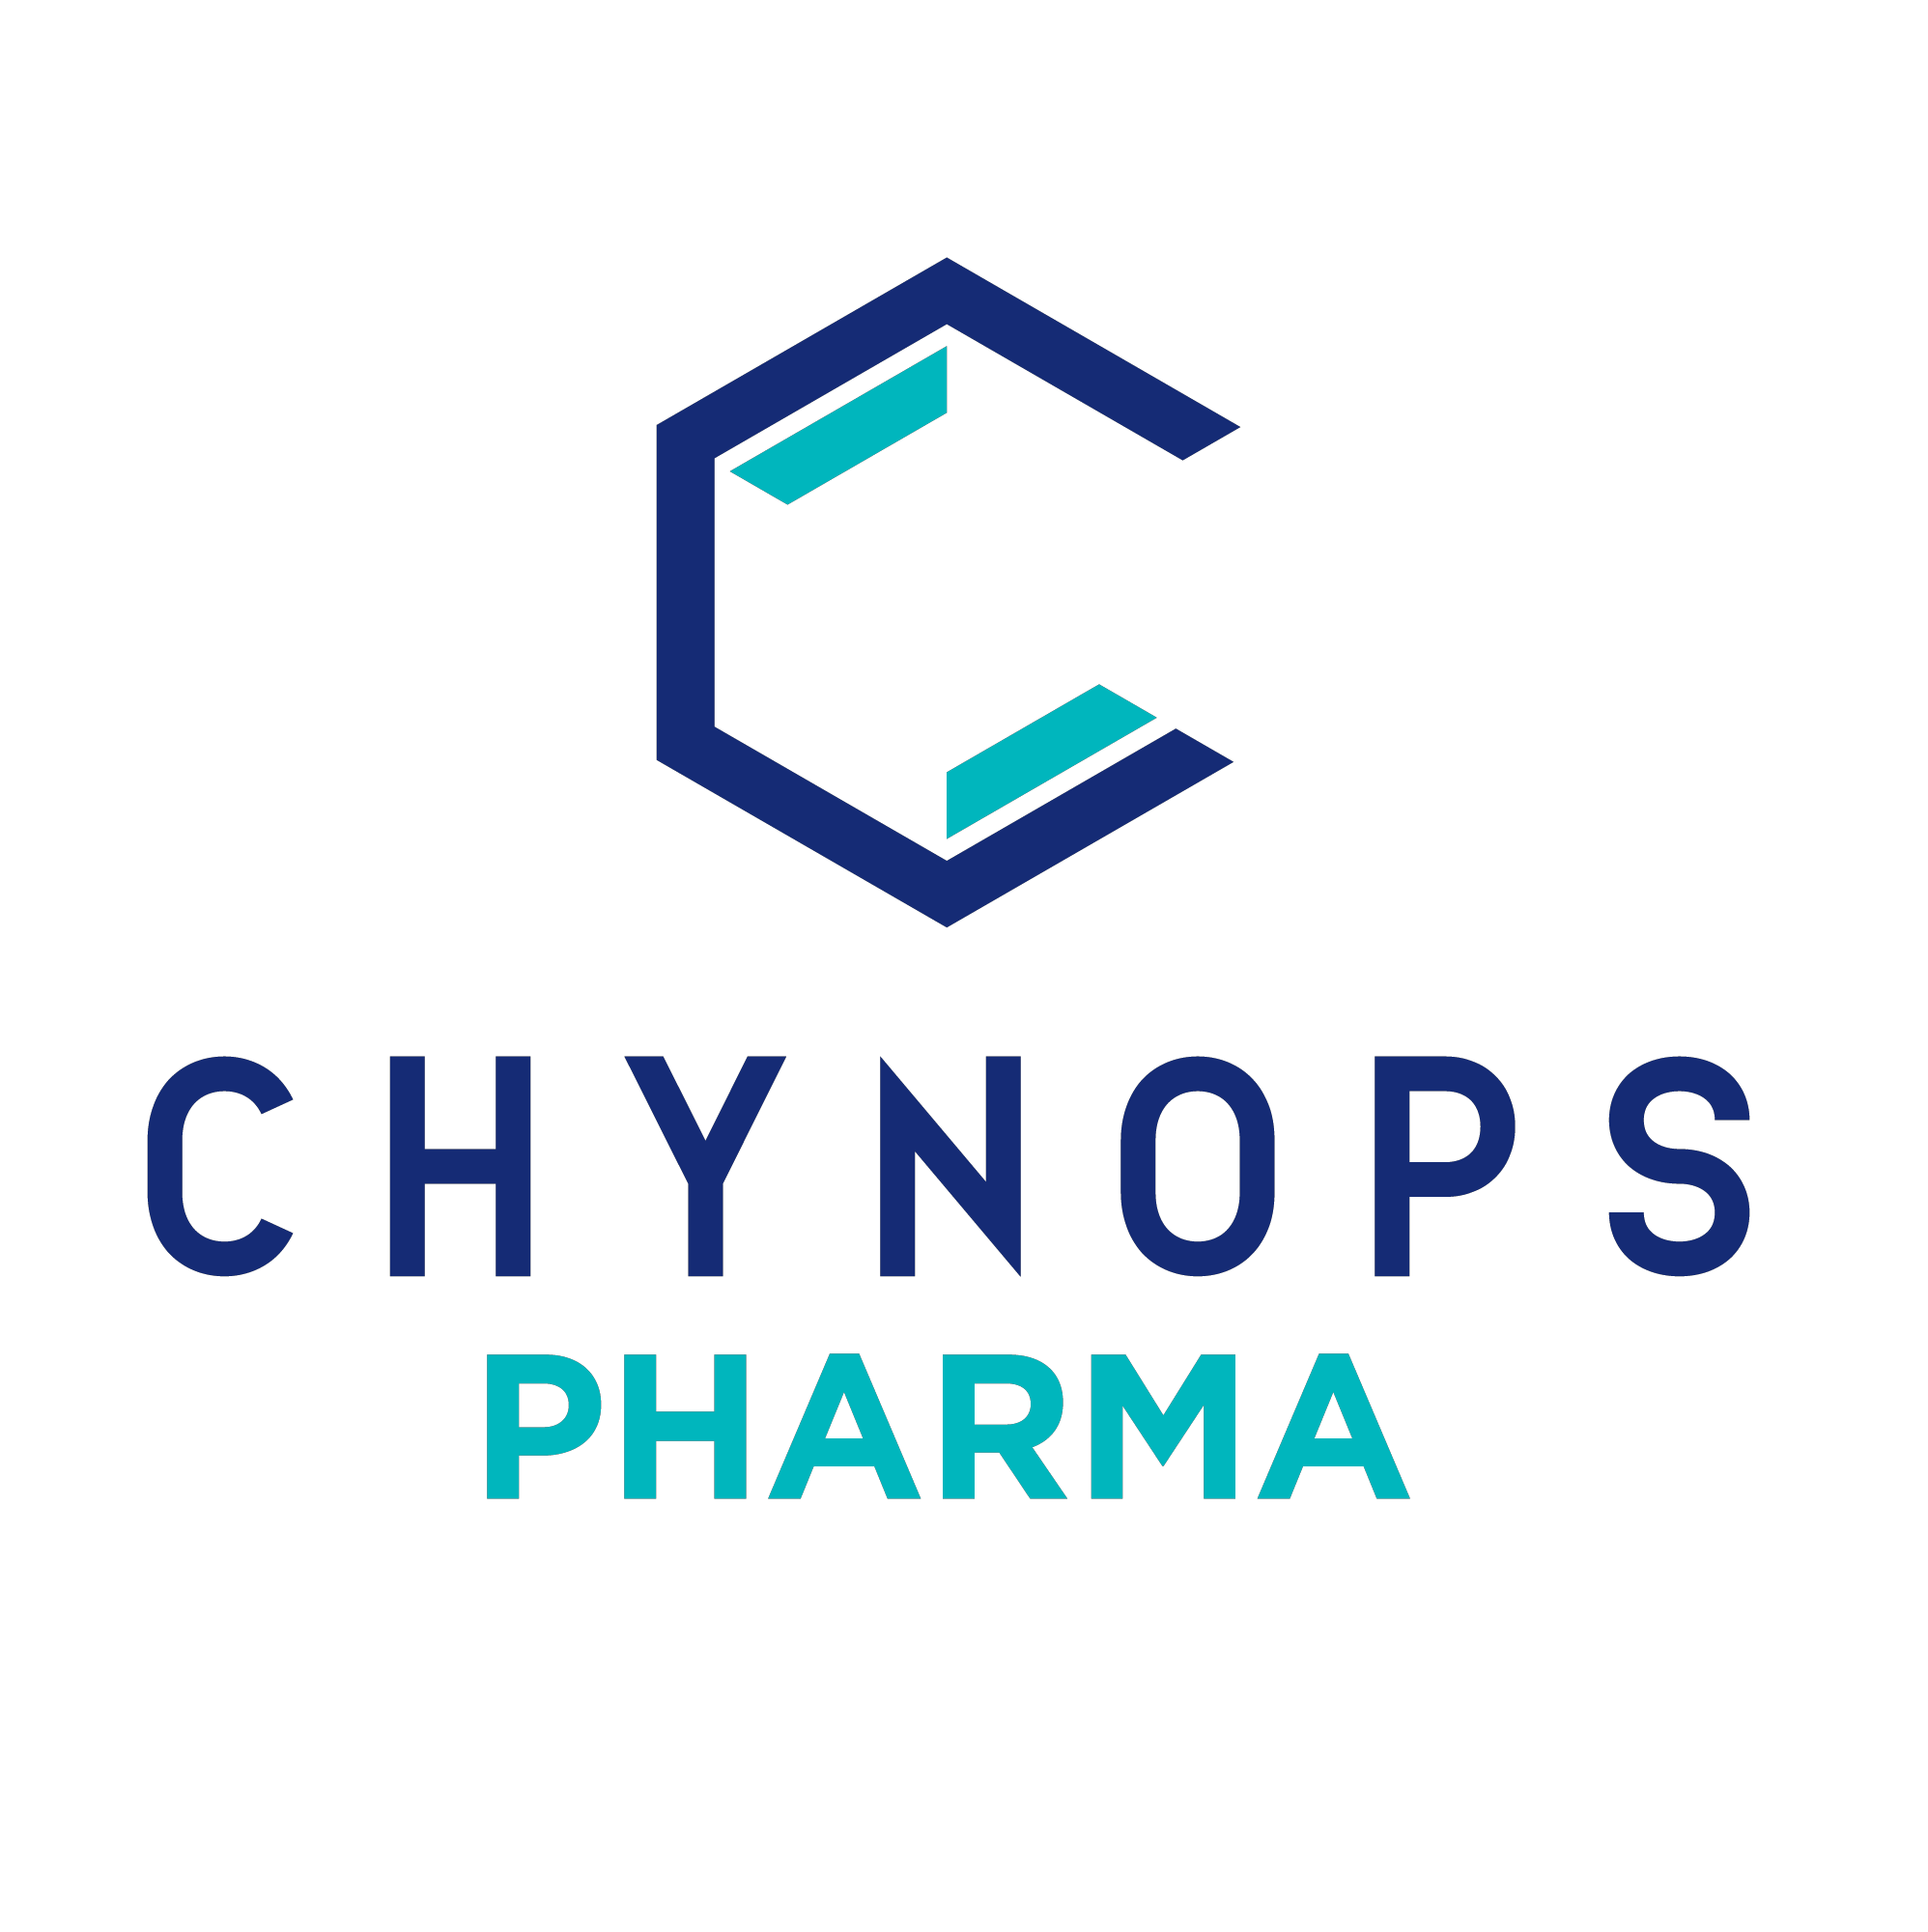 Chynops Pharma